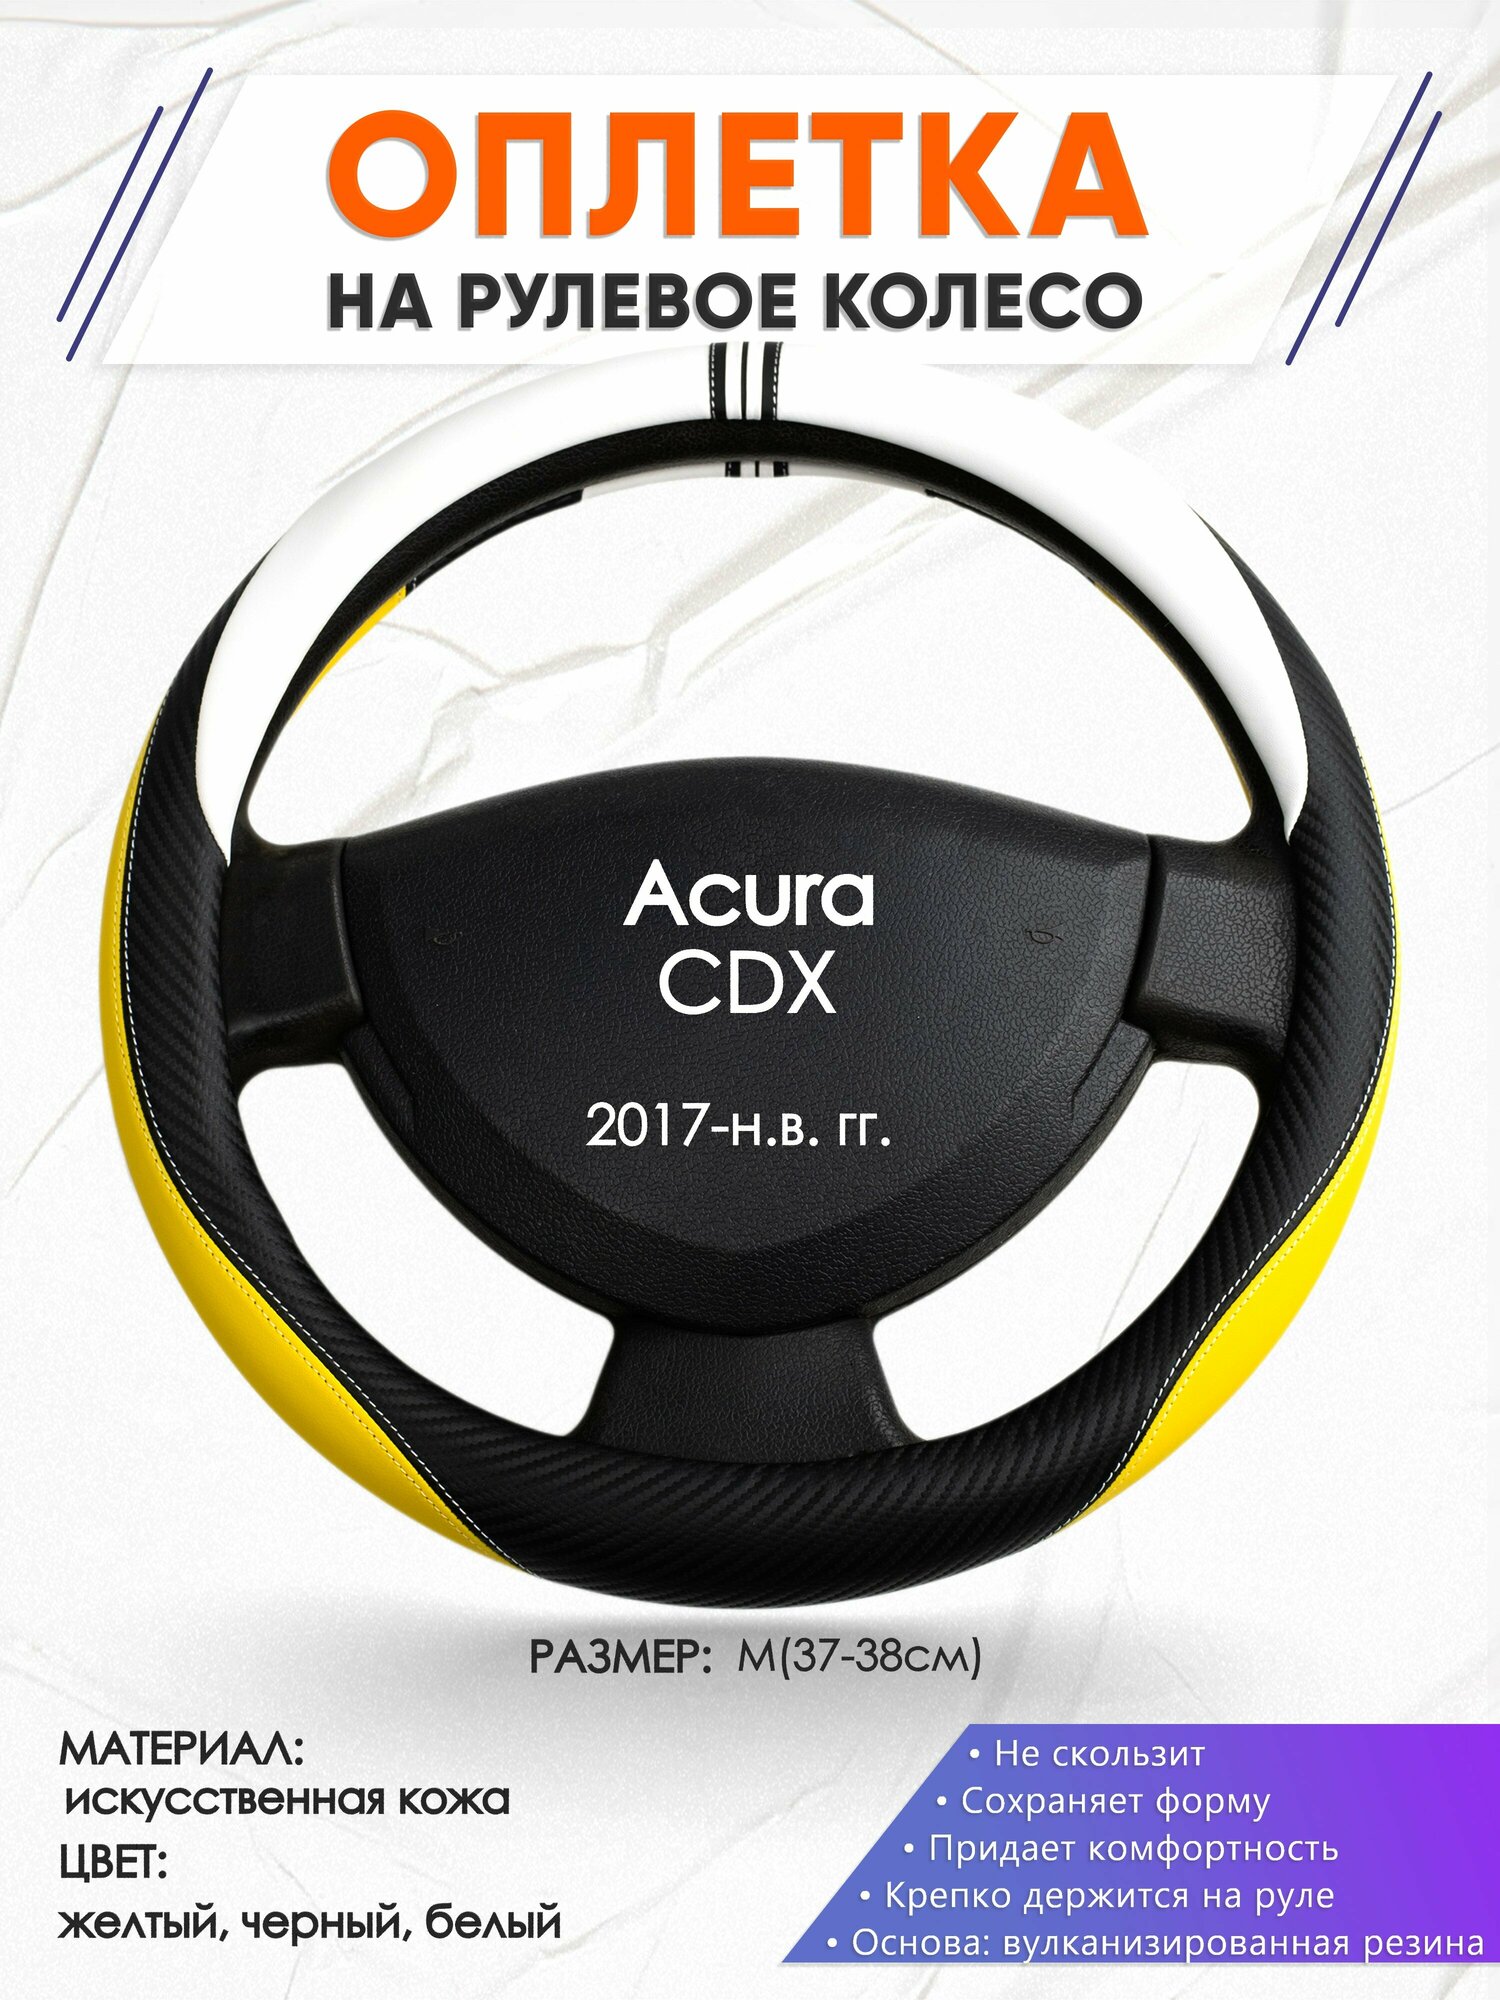 Оплетка наруль для Acura CDX(Акура СДХ) 2017-н.в. годов выпуска, размер M(37-38см), Искусственная кожа 56